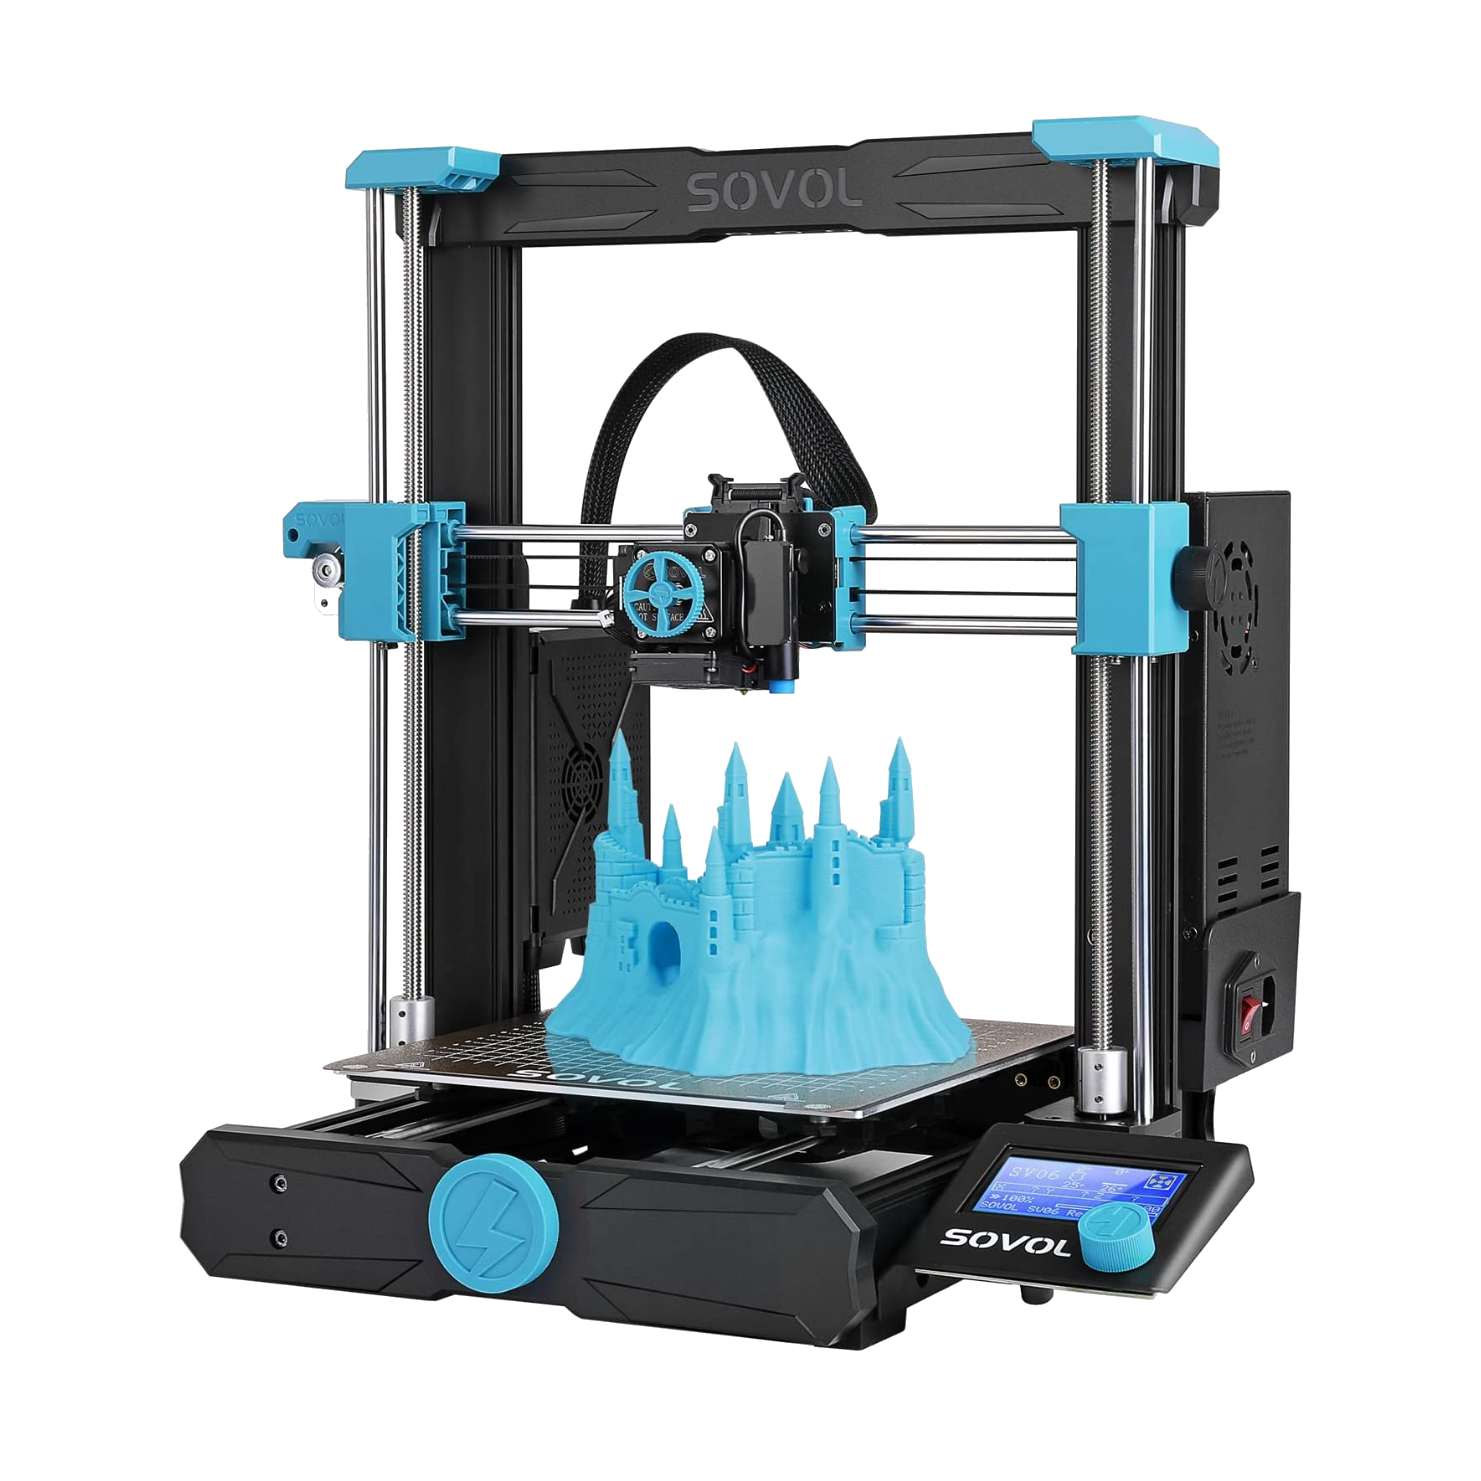 CREALITY 3D Printer on X: What makes the Ender-3 V3 KE build